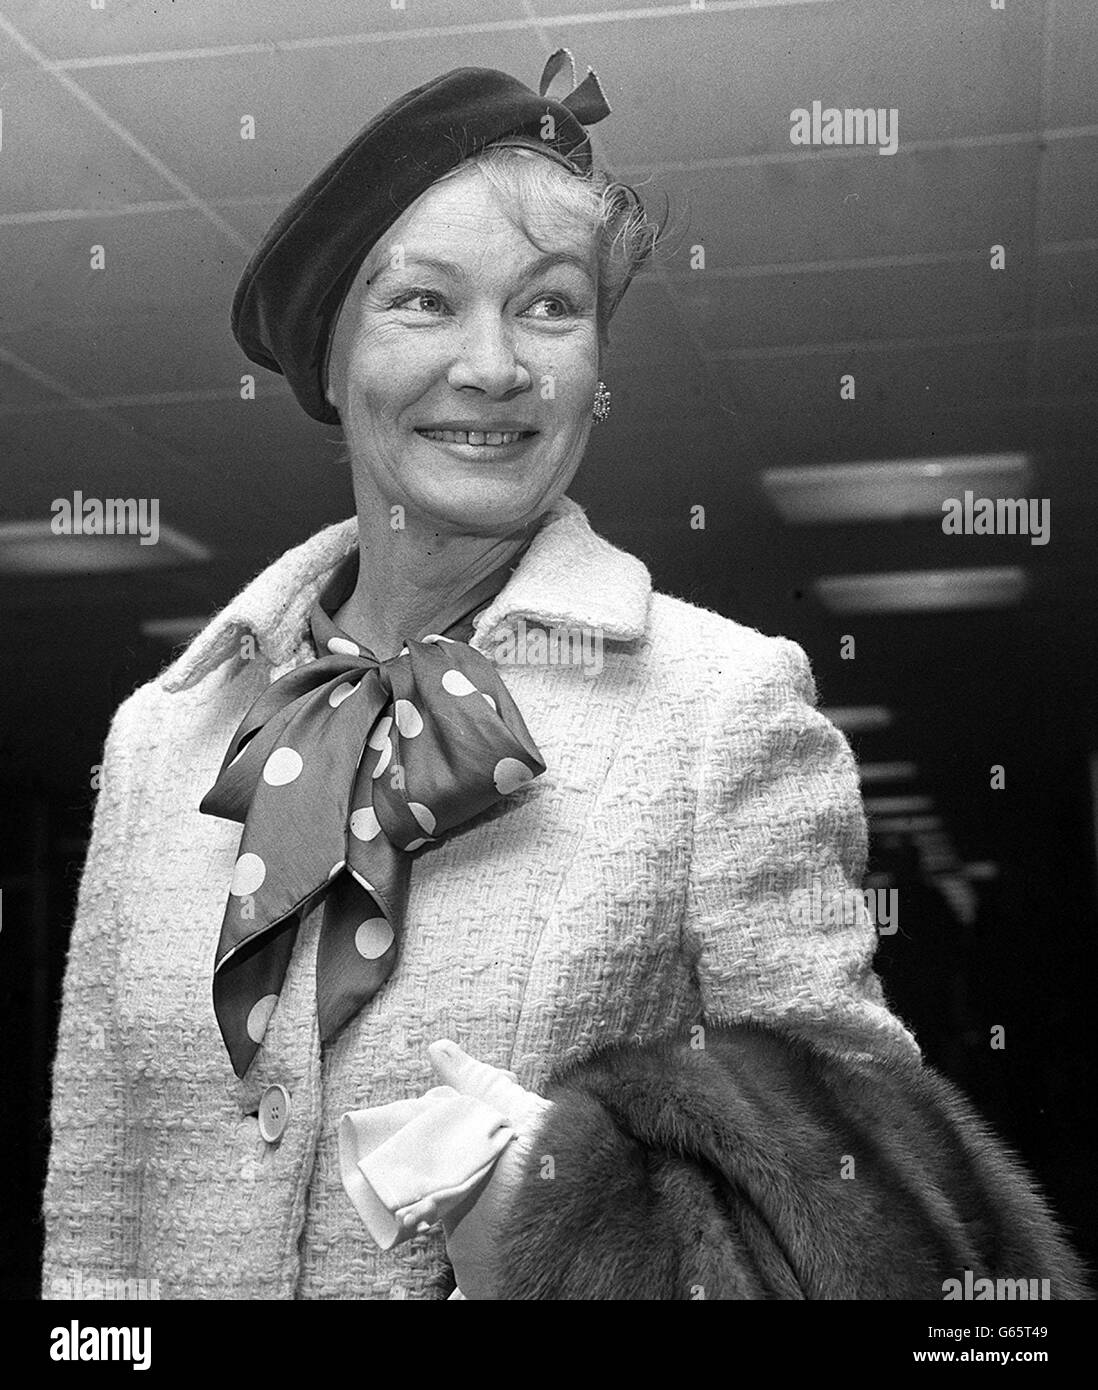 Veronica Lake, die 1940er-Filmstar mit der blonden Peek-a-boo-Frisur, erholte sich jetzt von dem Fieber, das sie bei ihrer Ankunft am Flughafen Heathrow daran hinderte, in einer kürzlich erschienenen Eamonn Andrews TV-Show zu erscheinen. Stockfoto